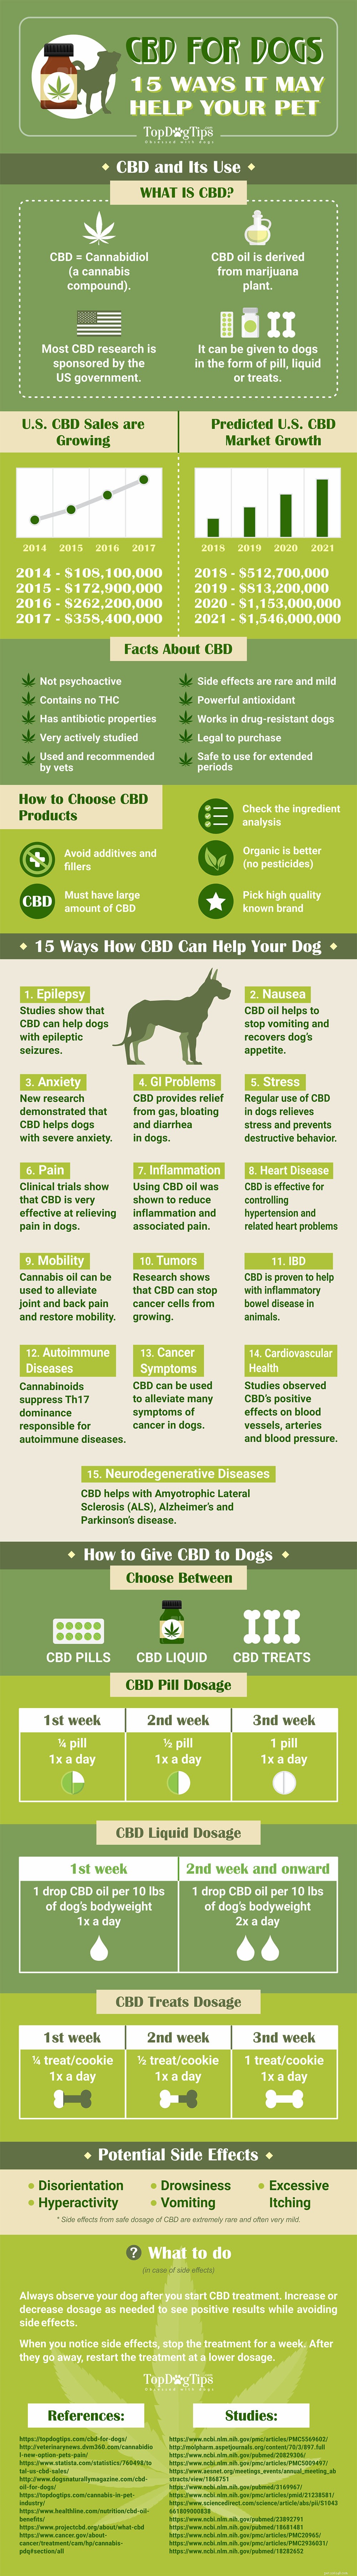 CBD e cani:15 modi in cui possono aiutare il tuo animale domestico